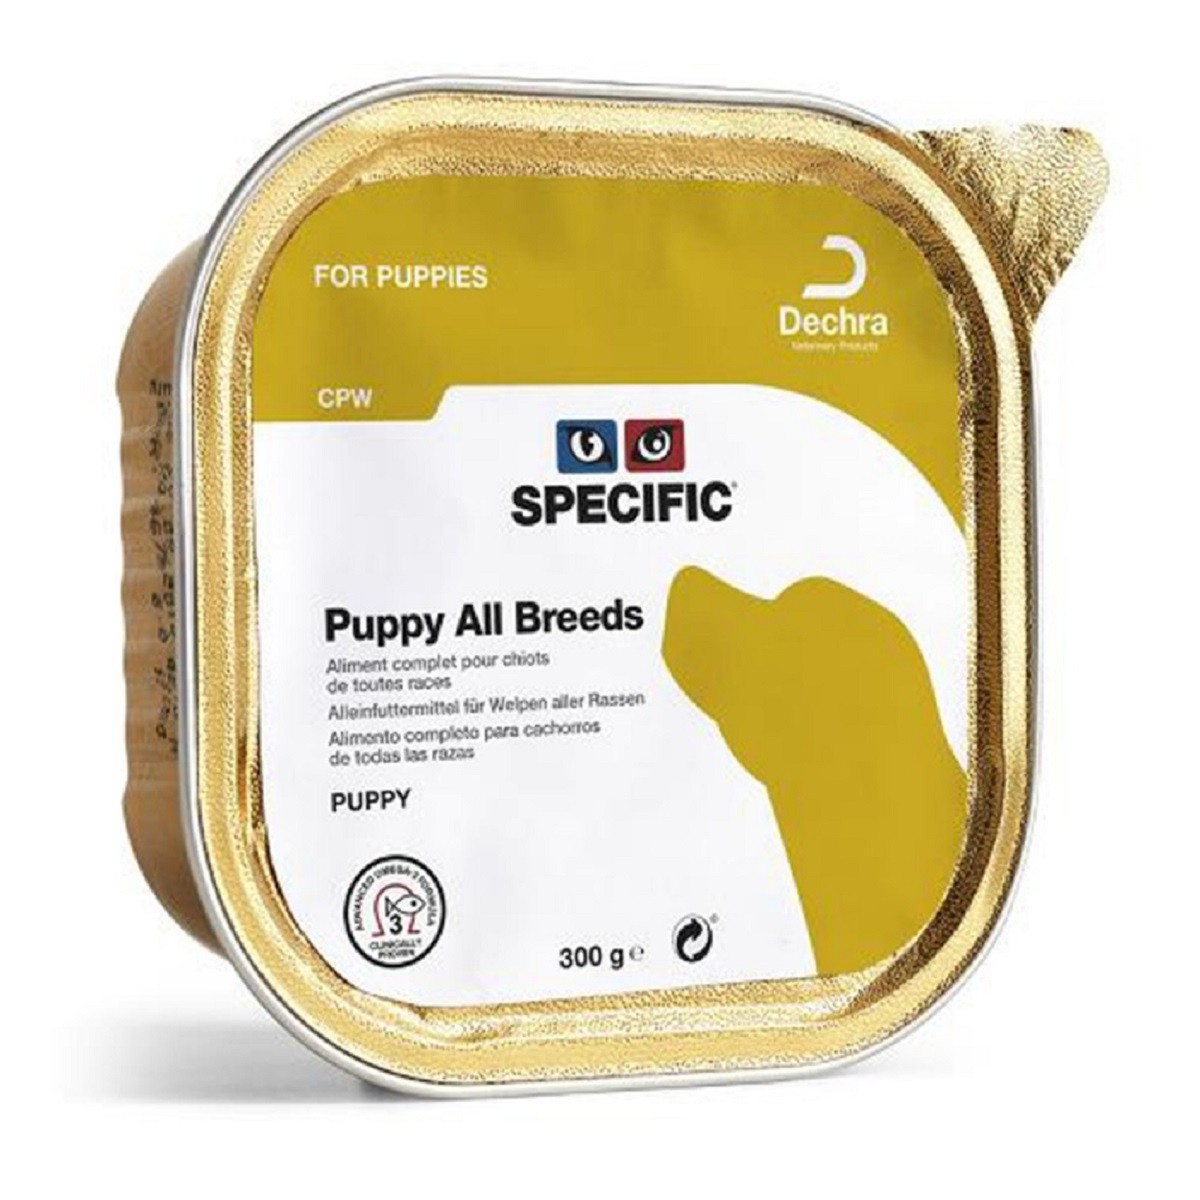 Confezione di 6 Patè SPECIFIC CPW Puppy 300g per Cuccioli